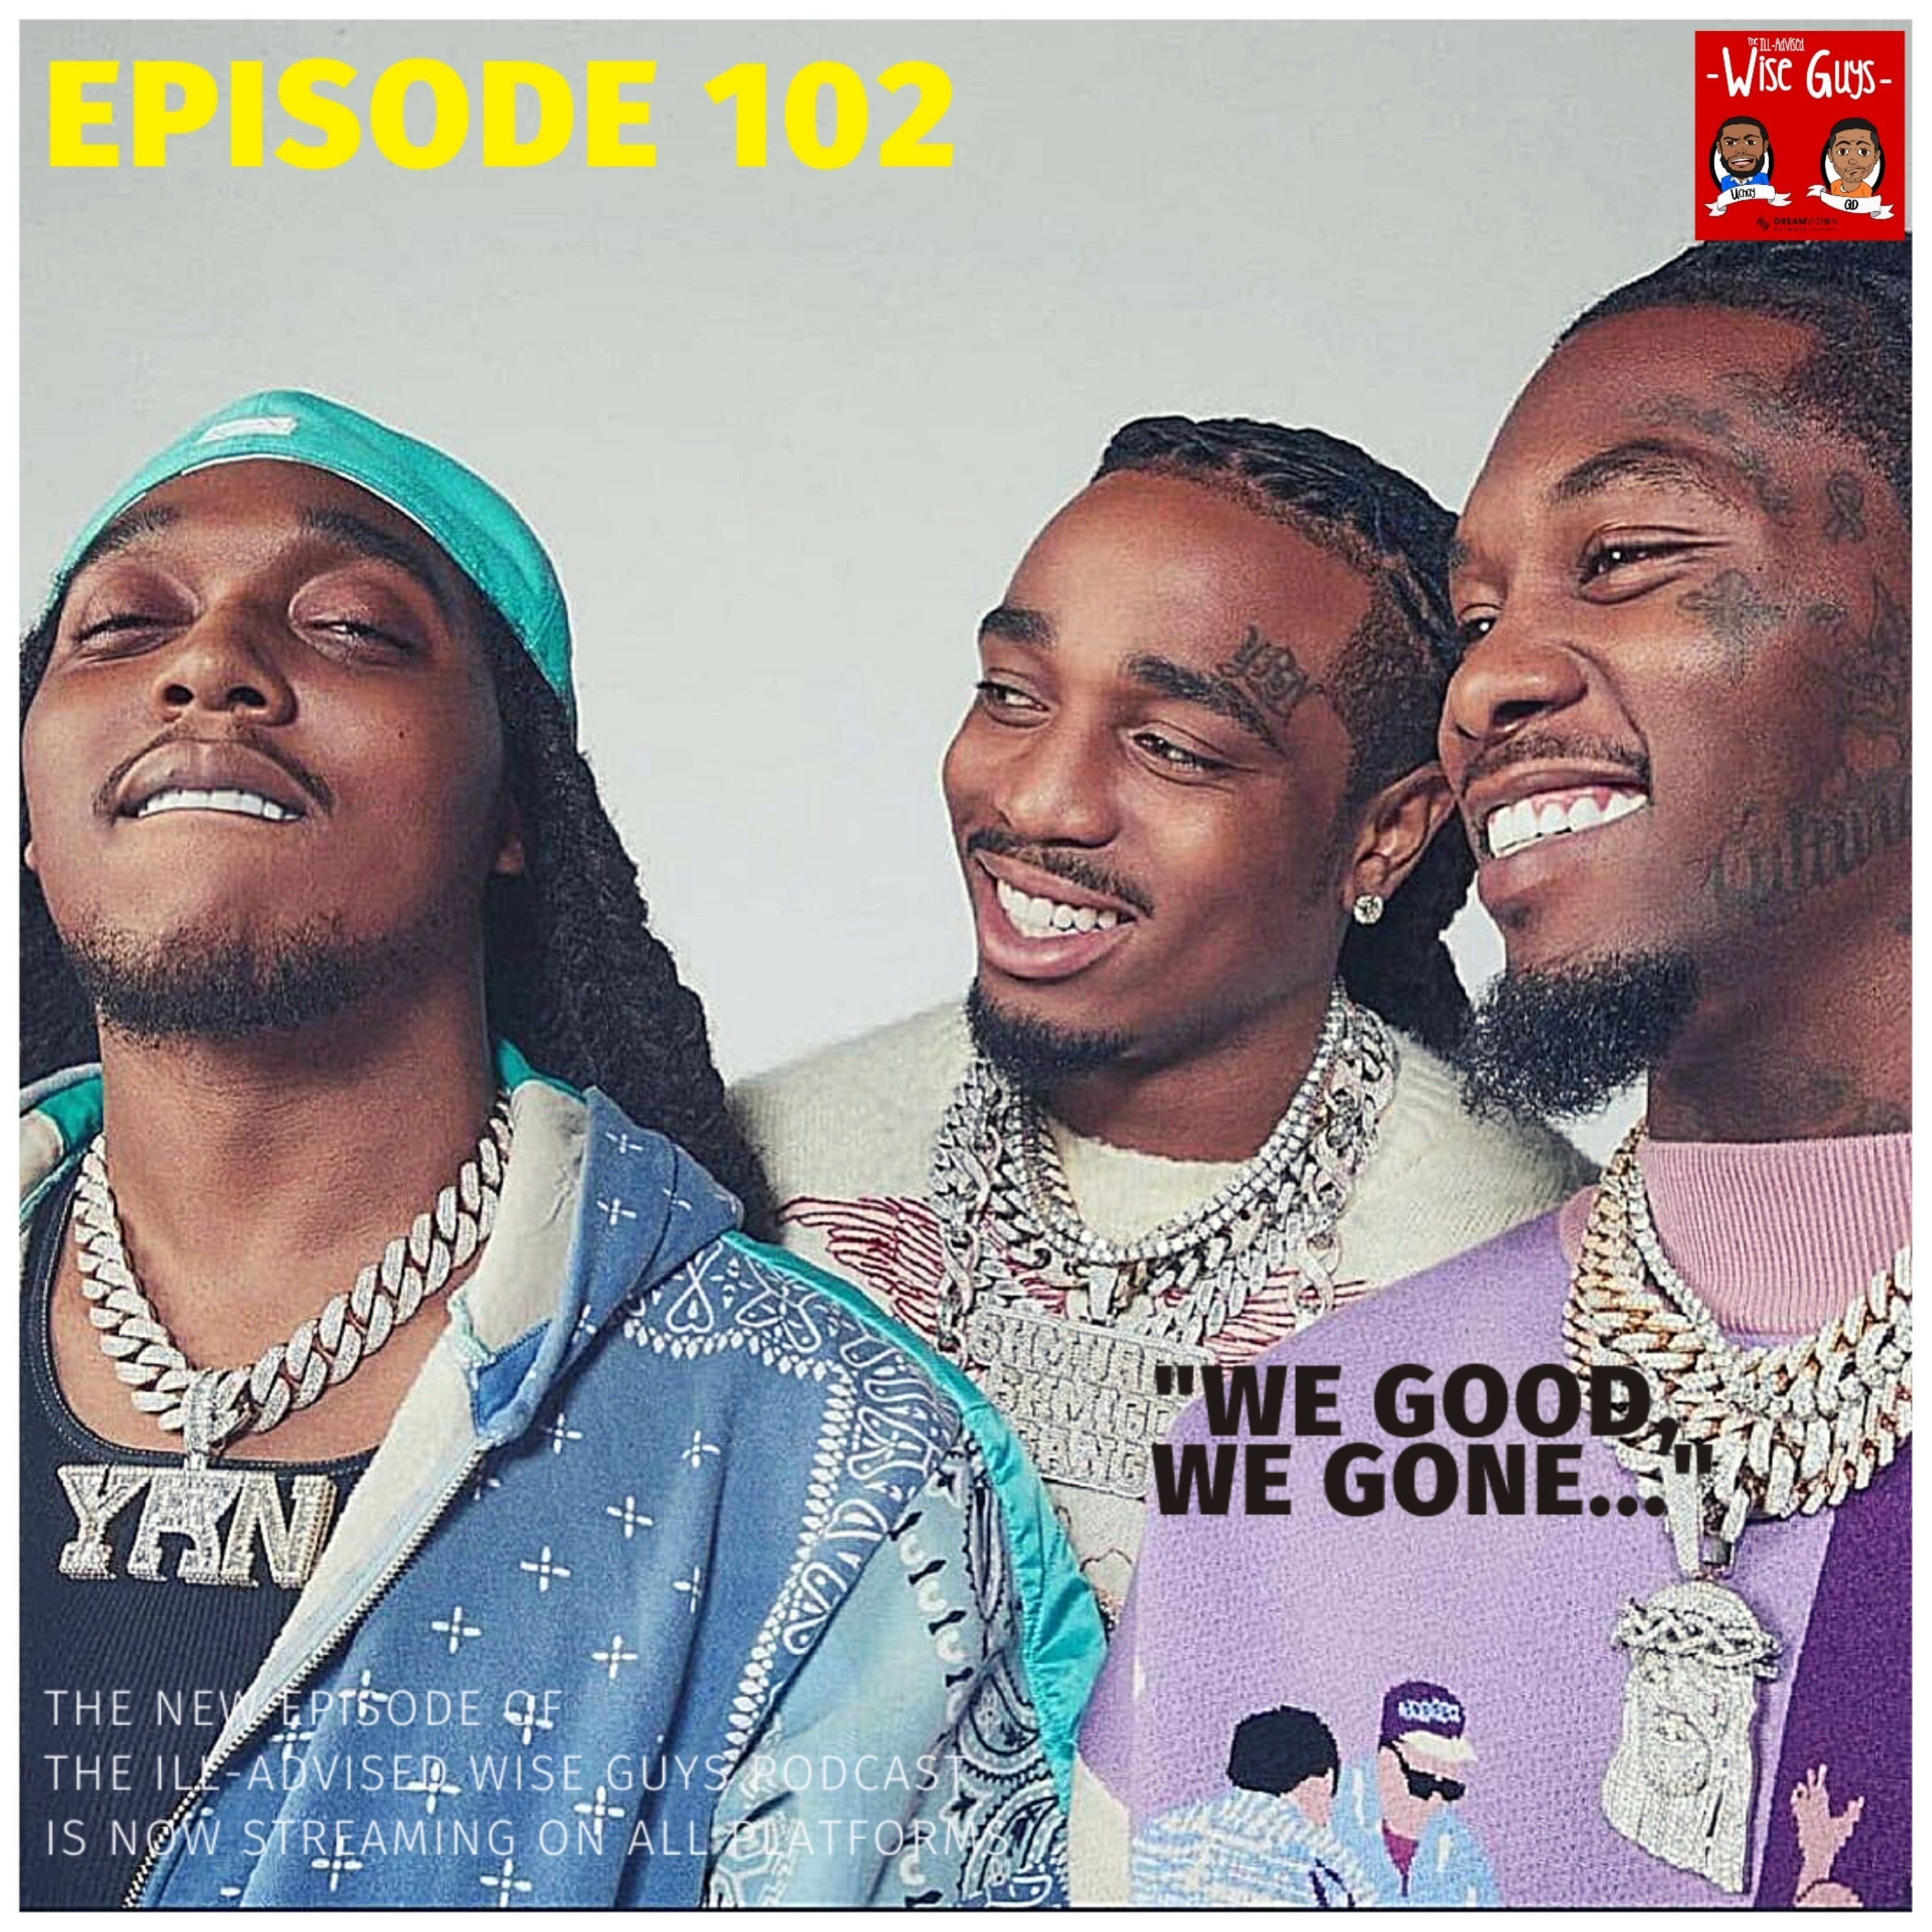 Episode 102 - "We Good, We Gone..." Image